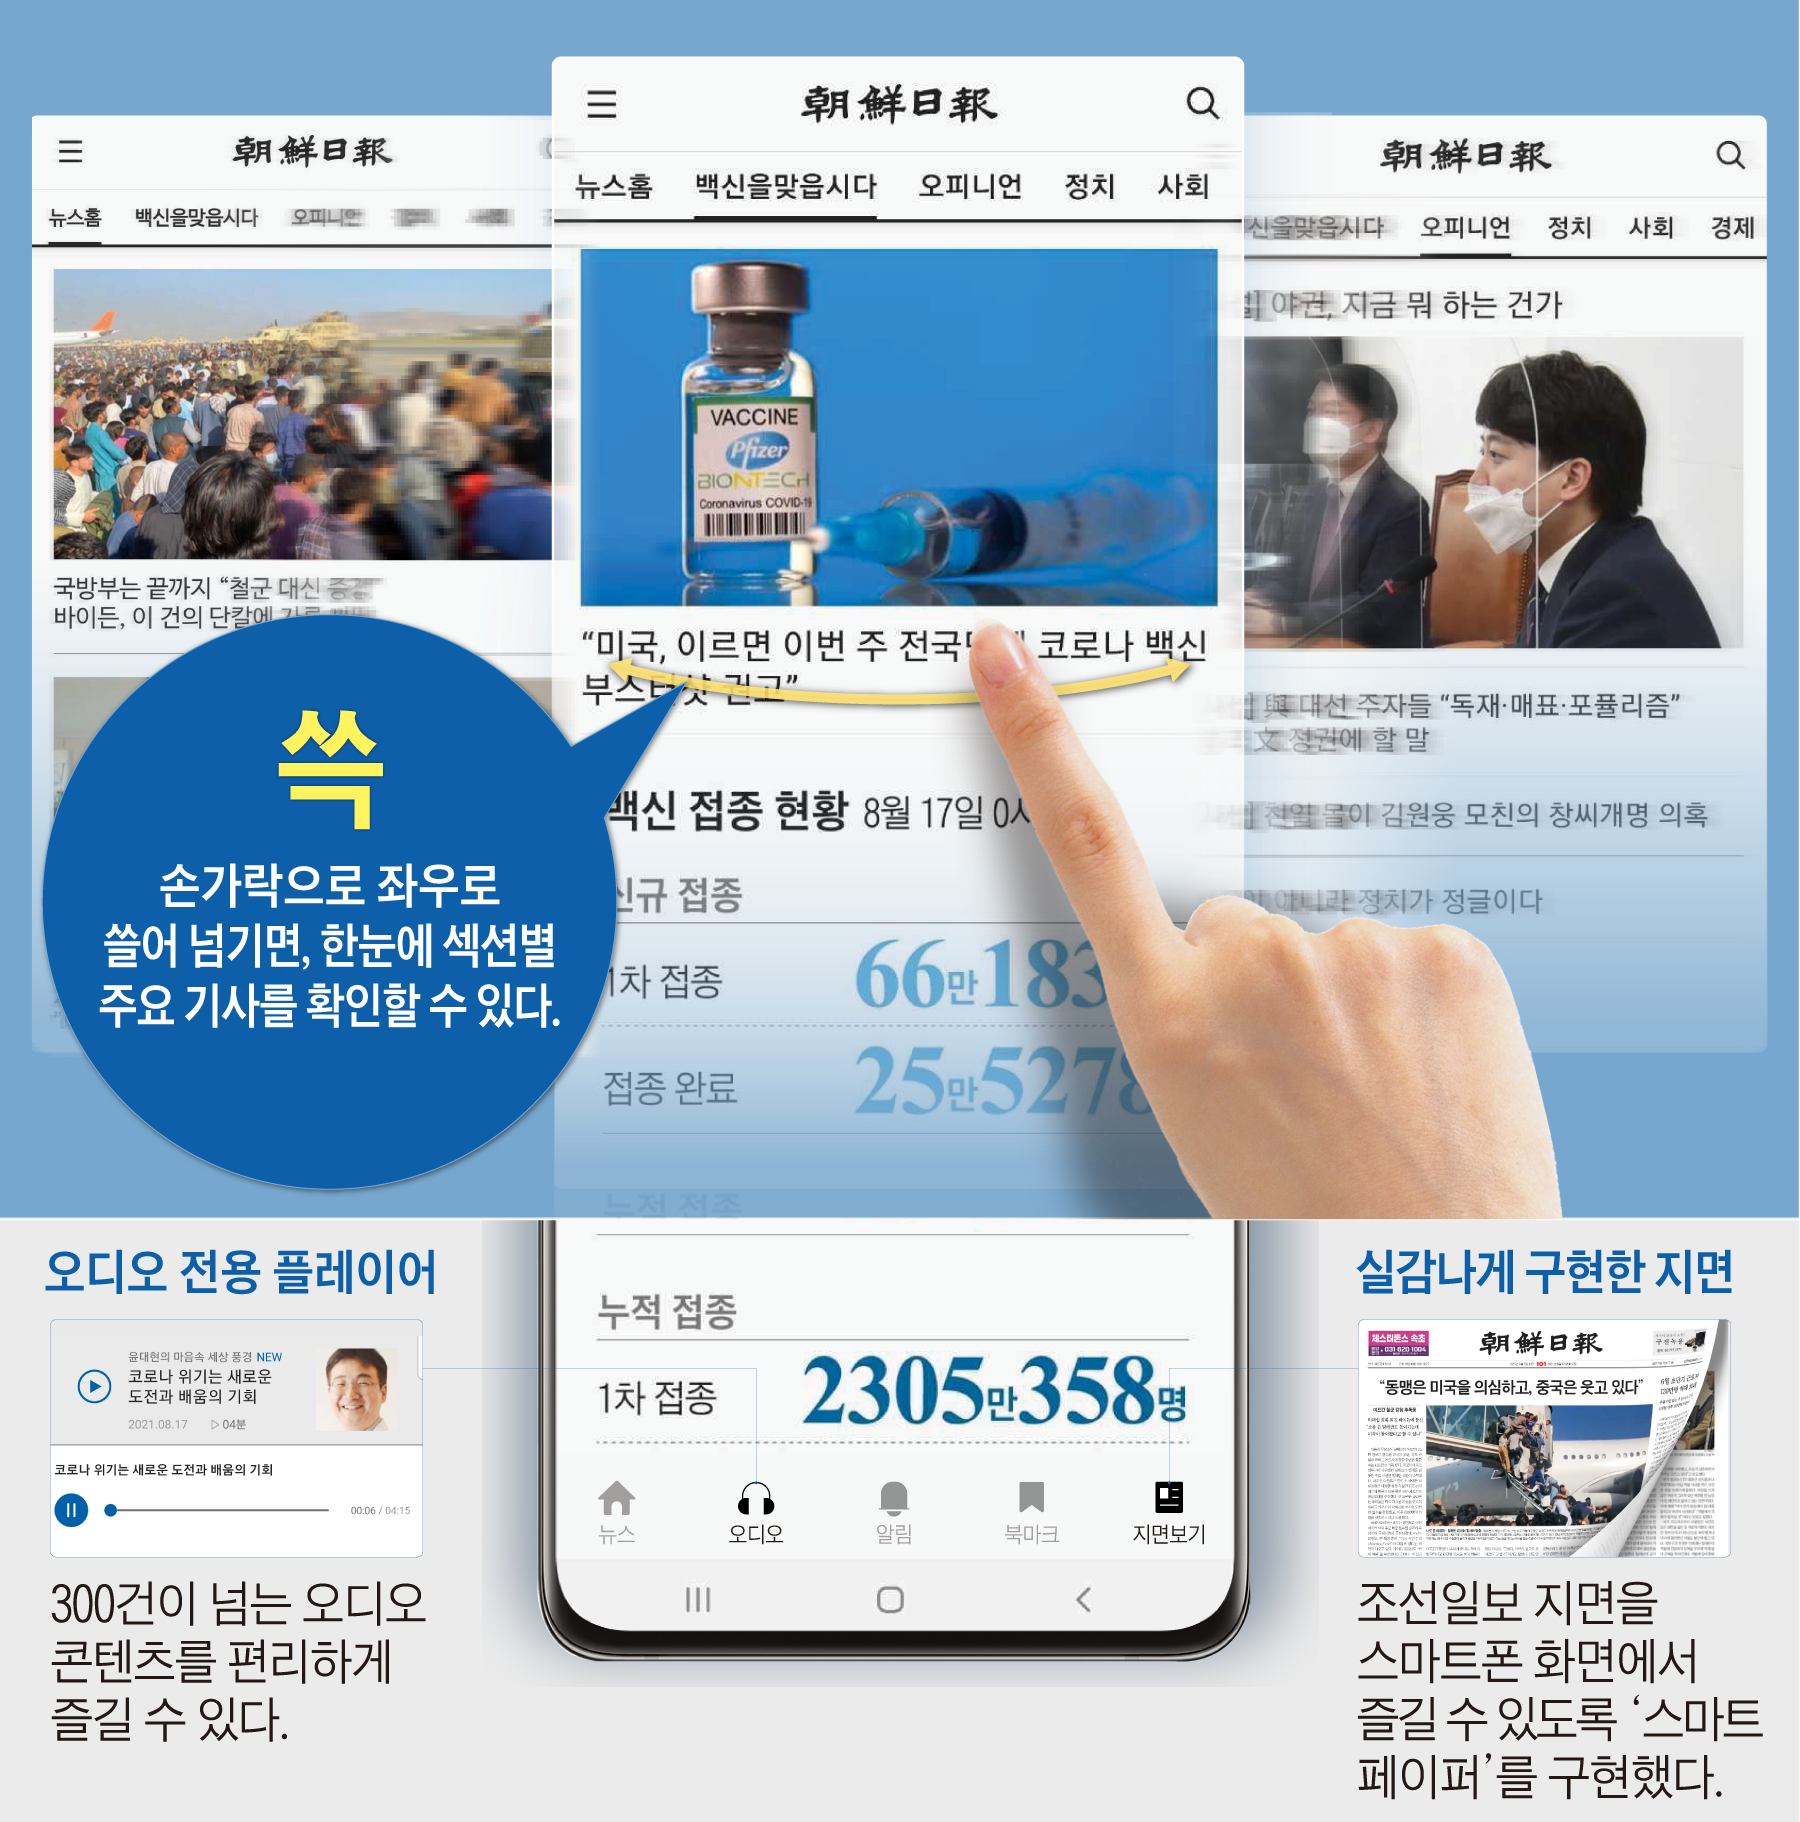 조선 닷컴 1 등 인터넷 뉴스